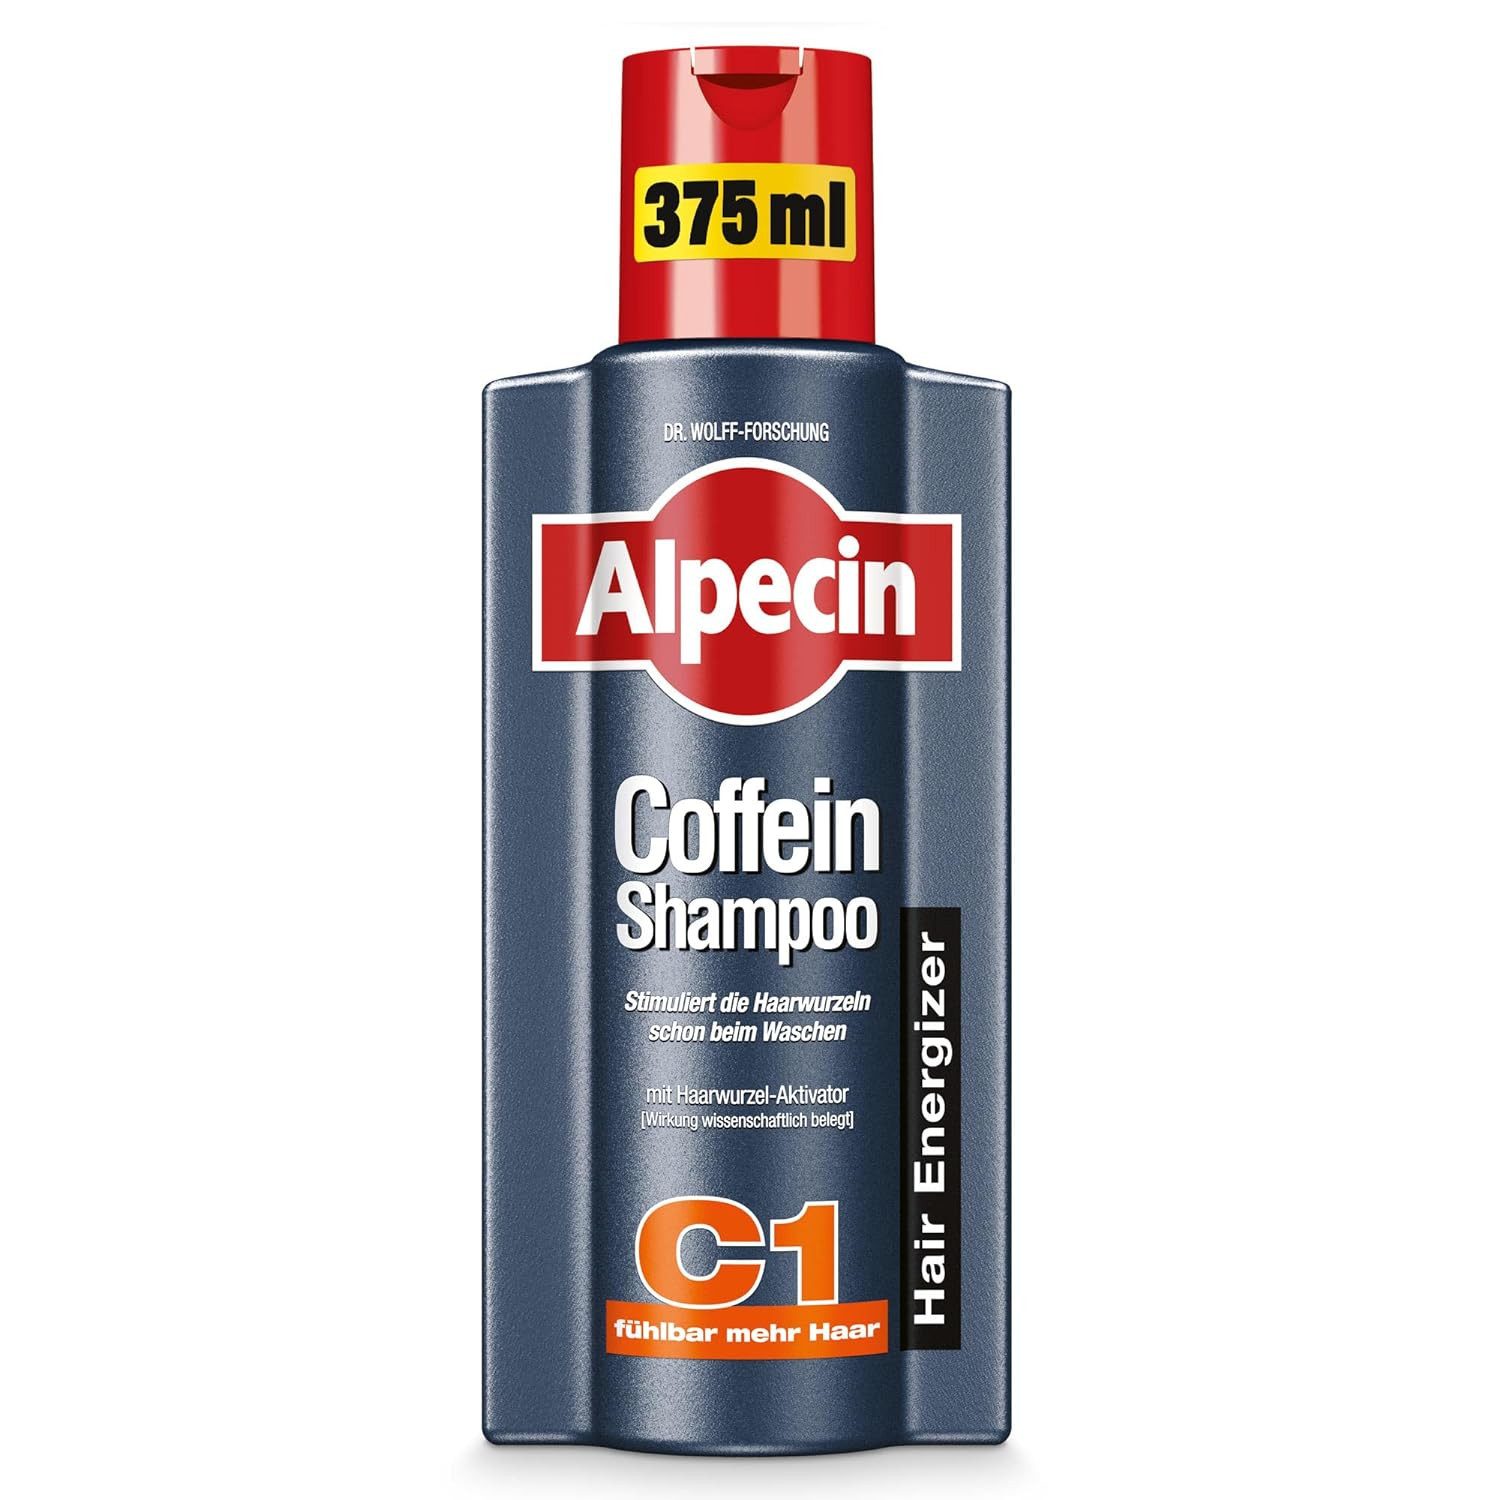 Alpecin Haarshampoo Coffein Shampoo C1 für die Haare, Haarwurzelstärkung 375ml, 1-tlg.